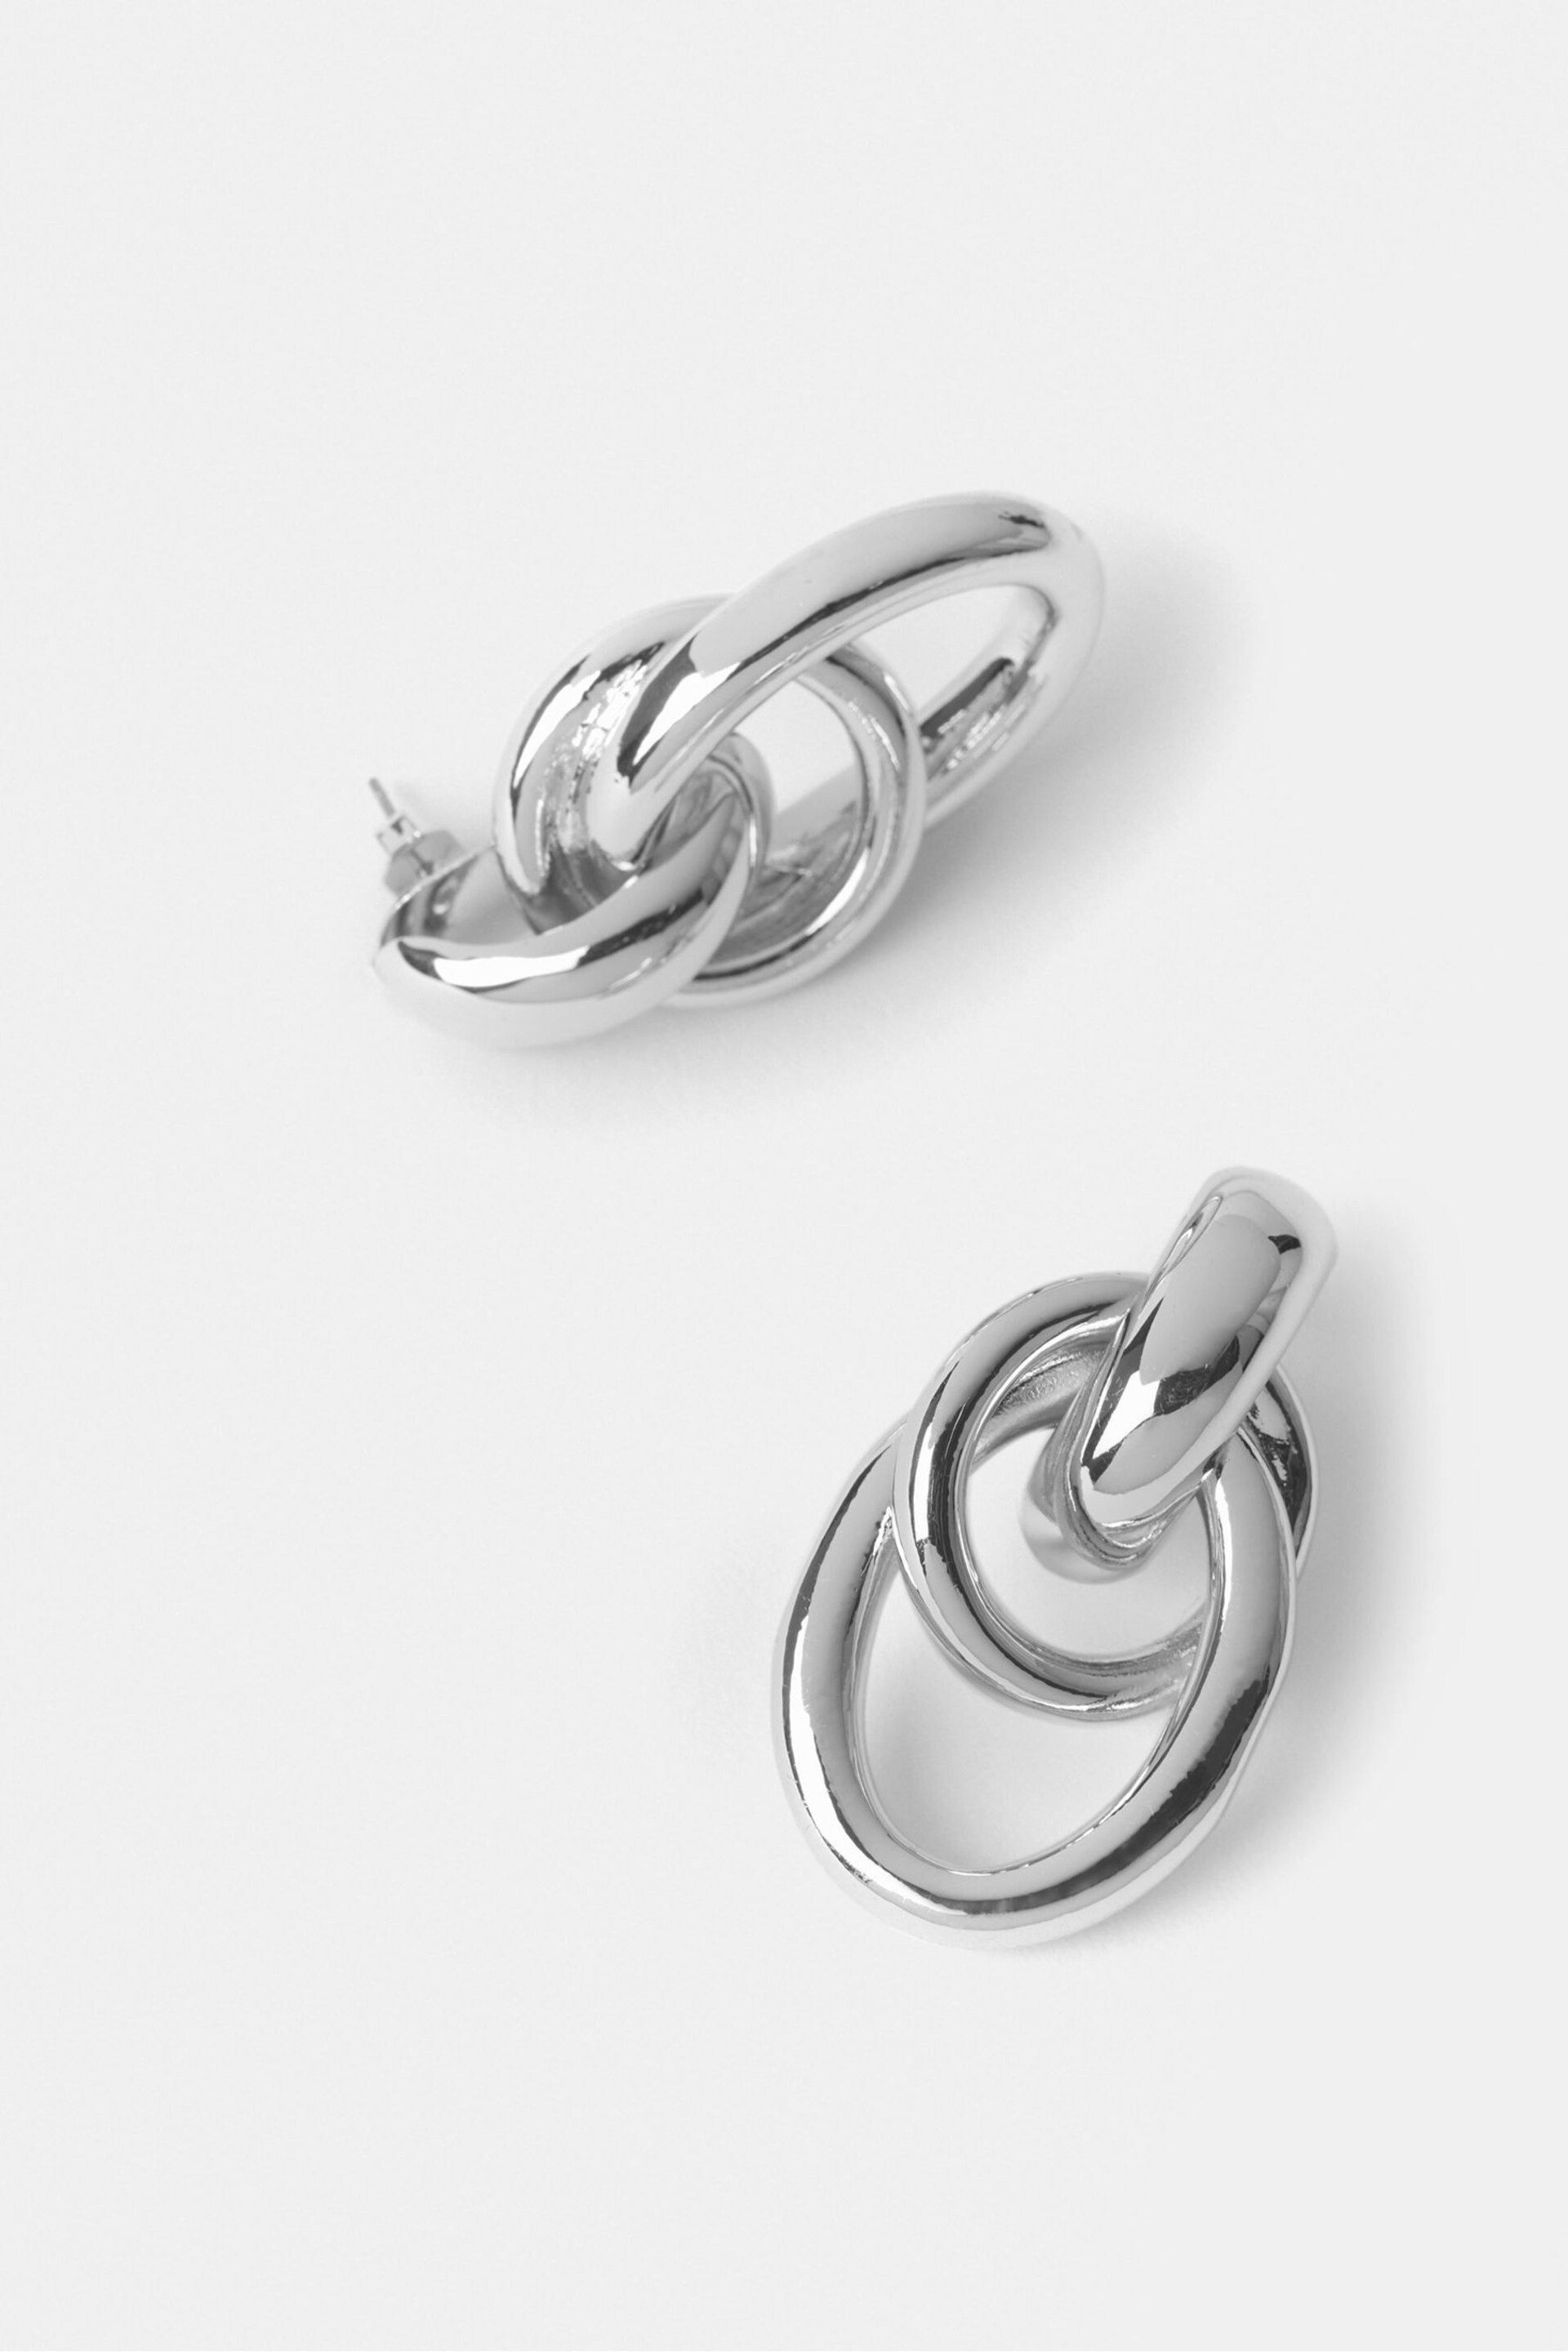 Mint Velvet Silver Tone Multi Hoop Stud Earrings - Image 2 of 3